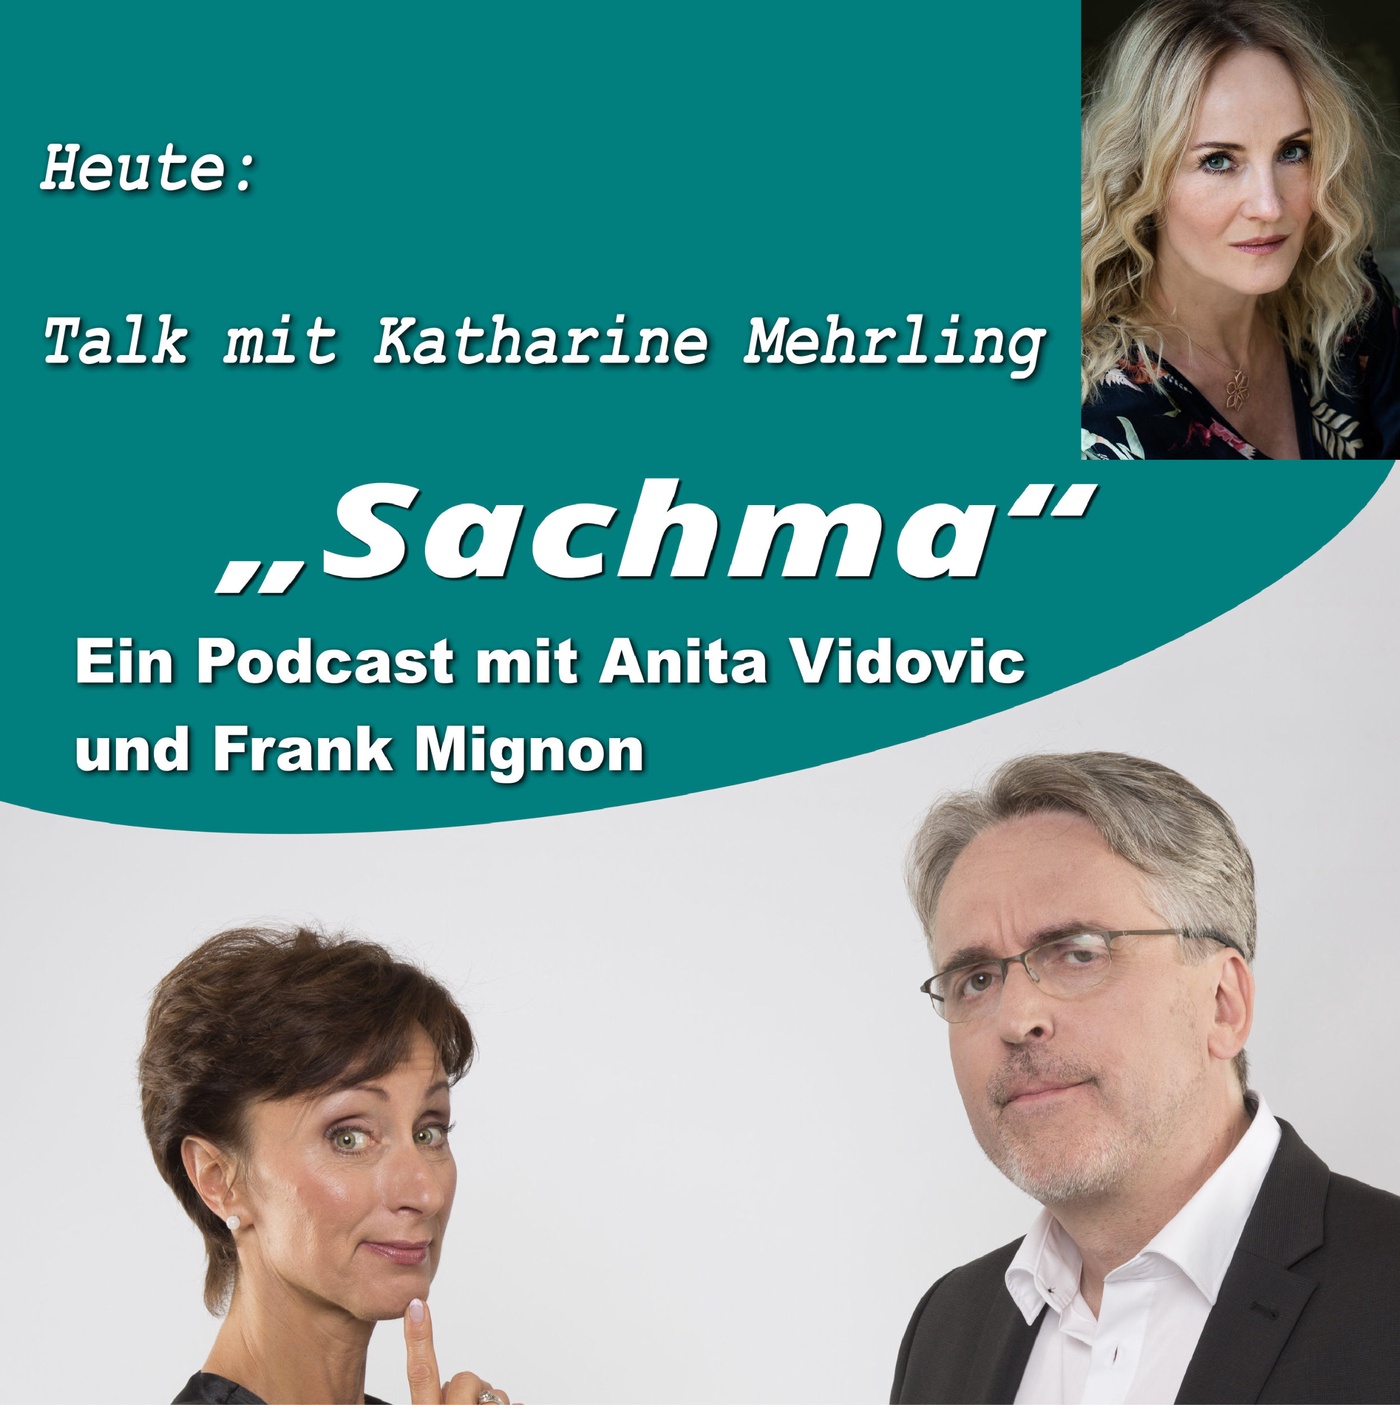 Sachma - Der Podcast - Talk mit Katharine Mehrling